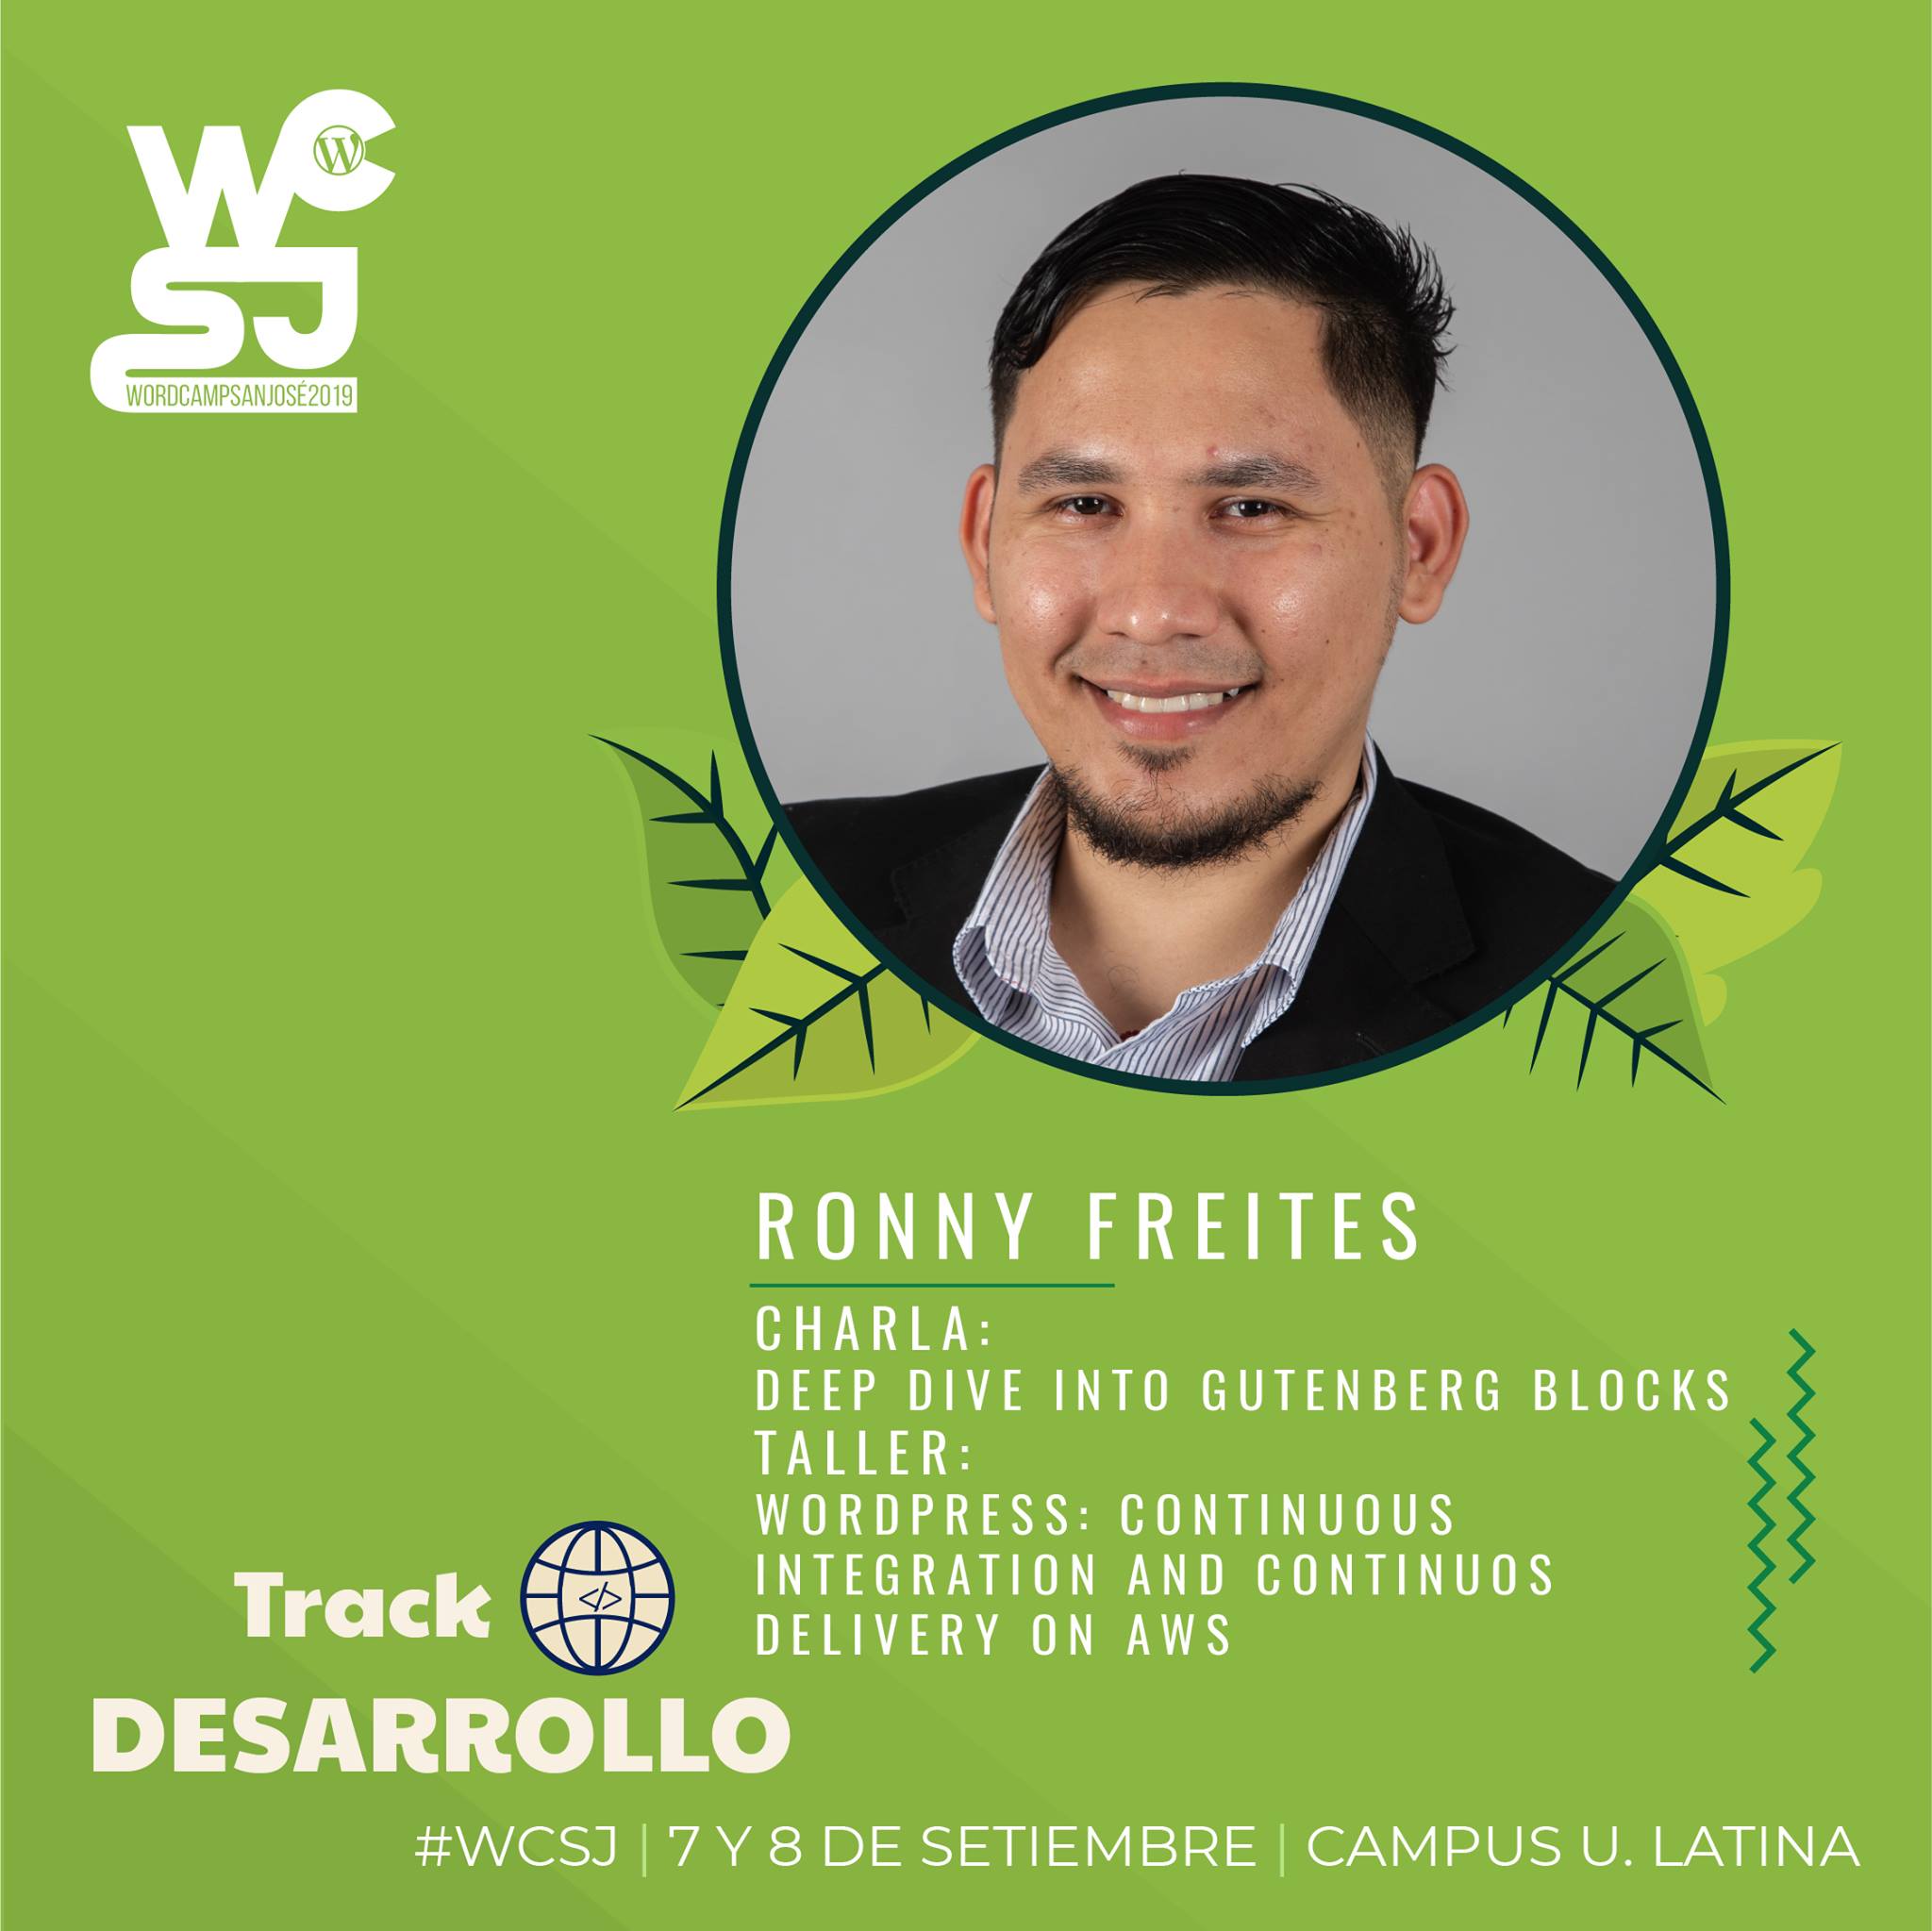 Ronny Freites ponente del WordCamp Sj 2019